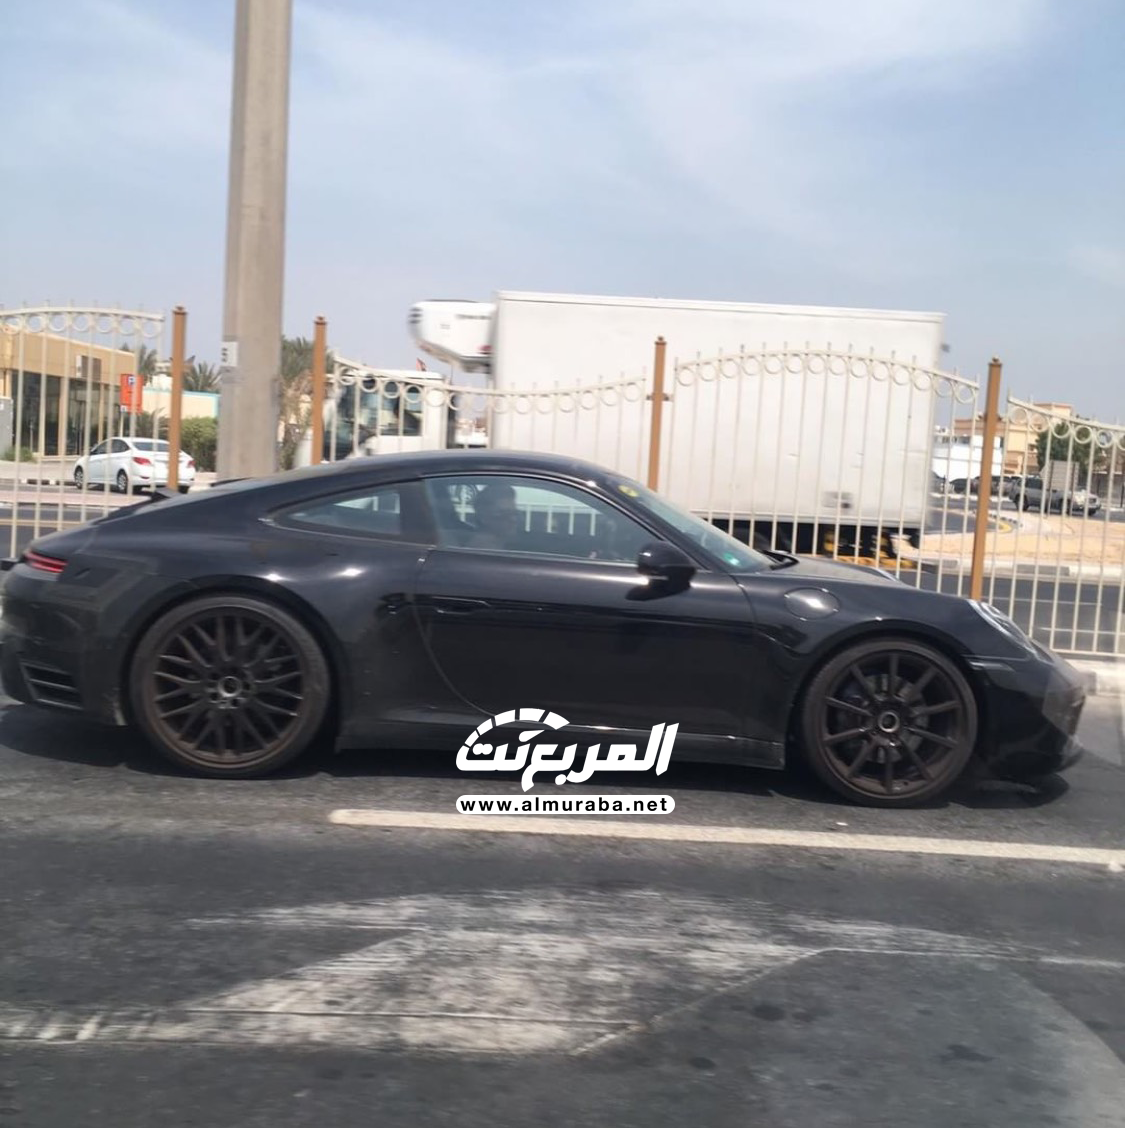 "بالصور" بورش 911 الجديدة كلياً تختبر نفسها في شوارع مدينة دبي 12